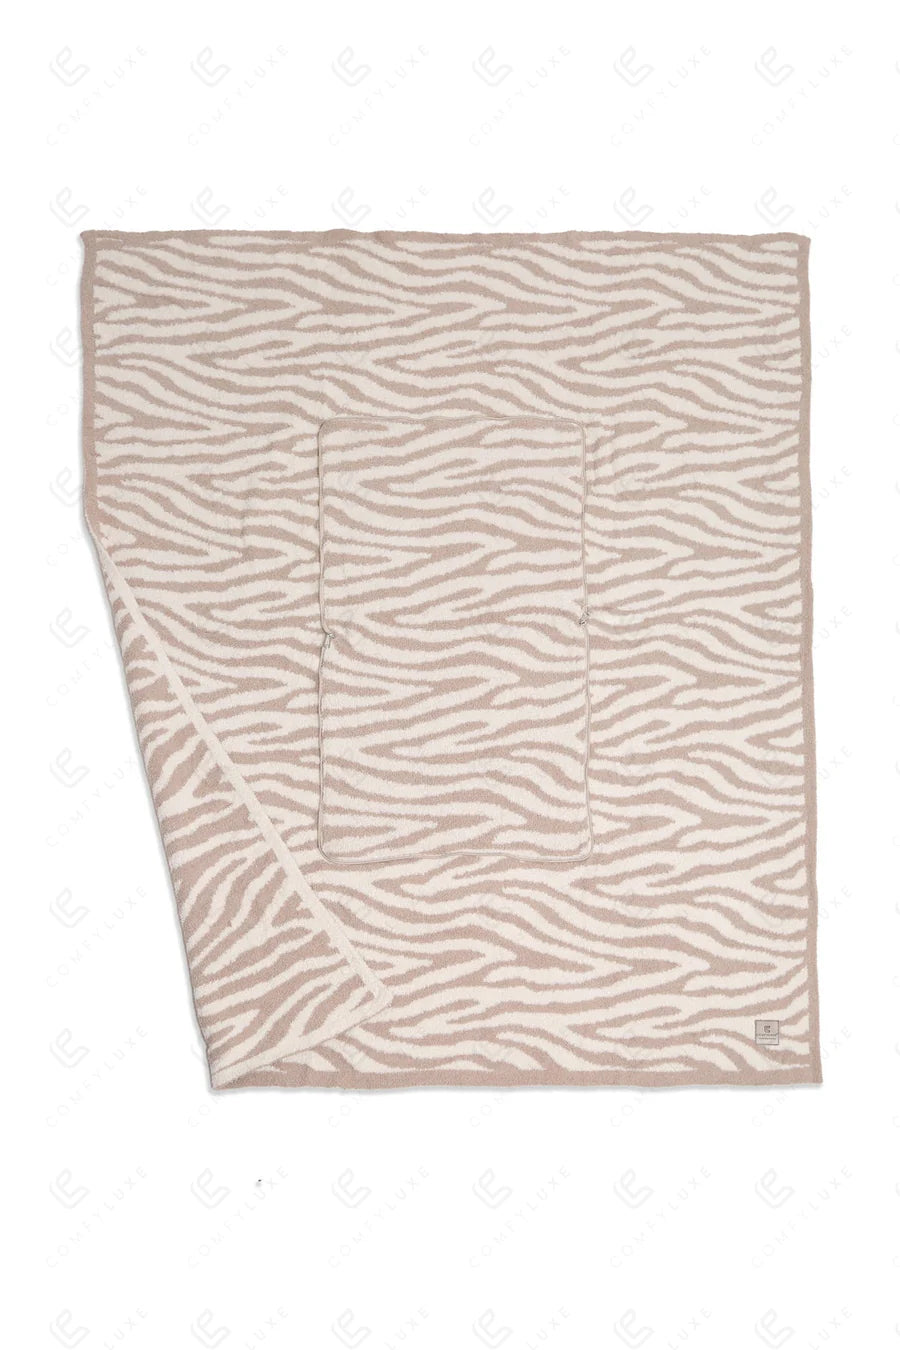 Zebra 2 in 1 Blanket